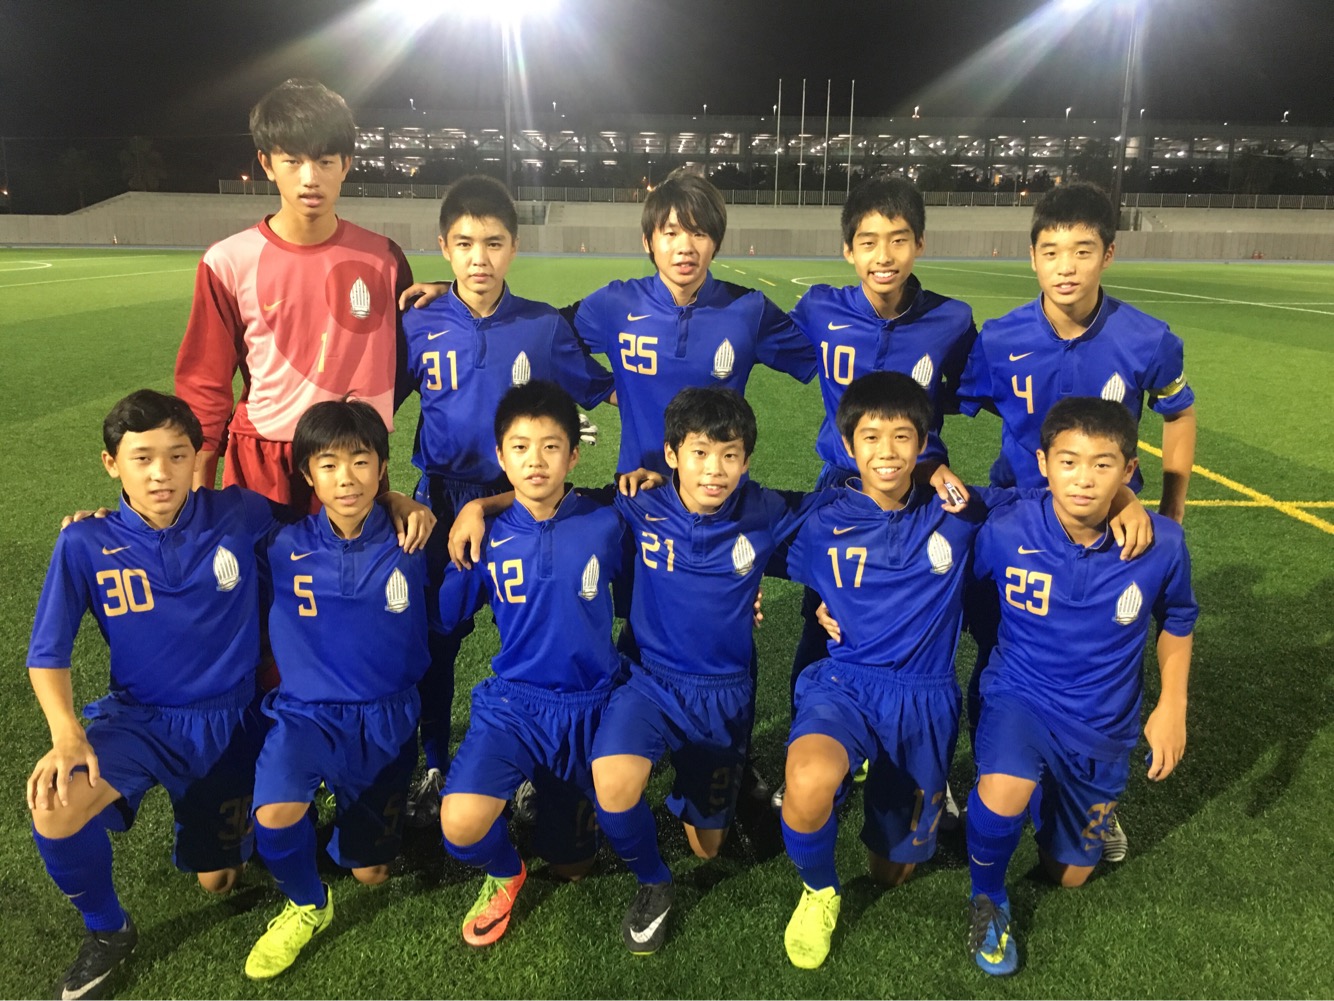 【U14】第8回千葉県クラブユース(U-15)サッカー連盟 U-14リーグ